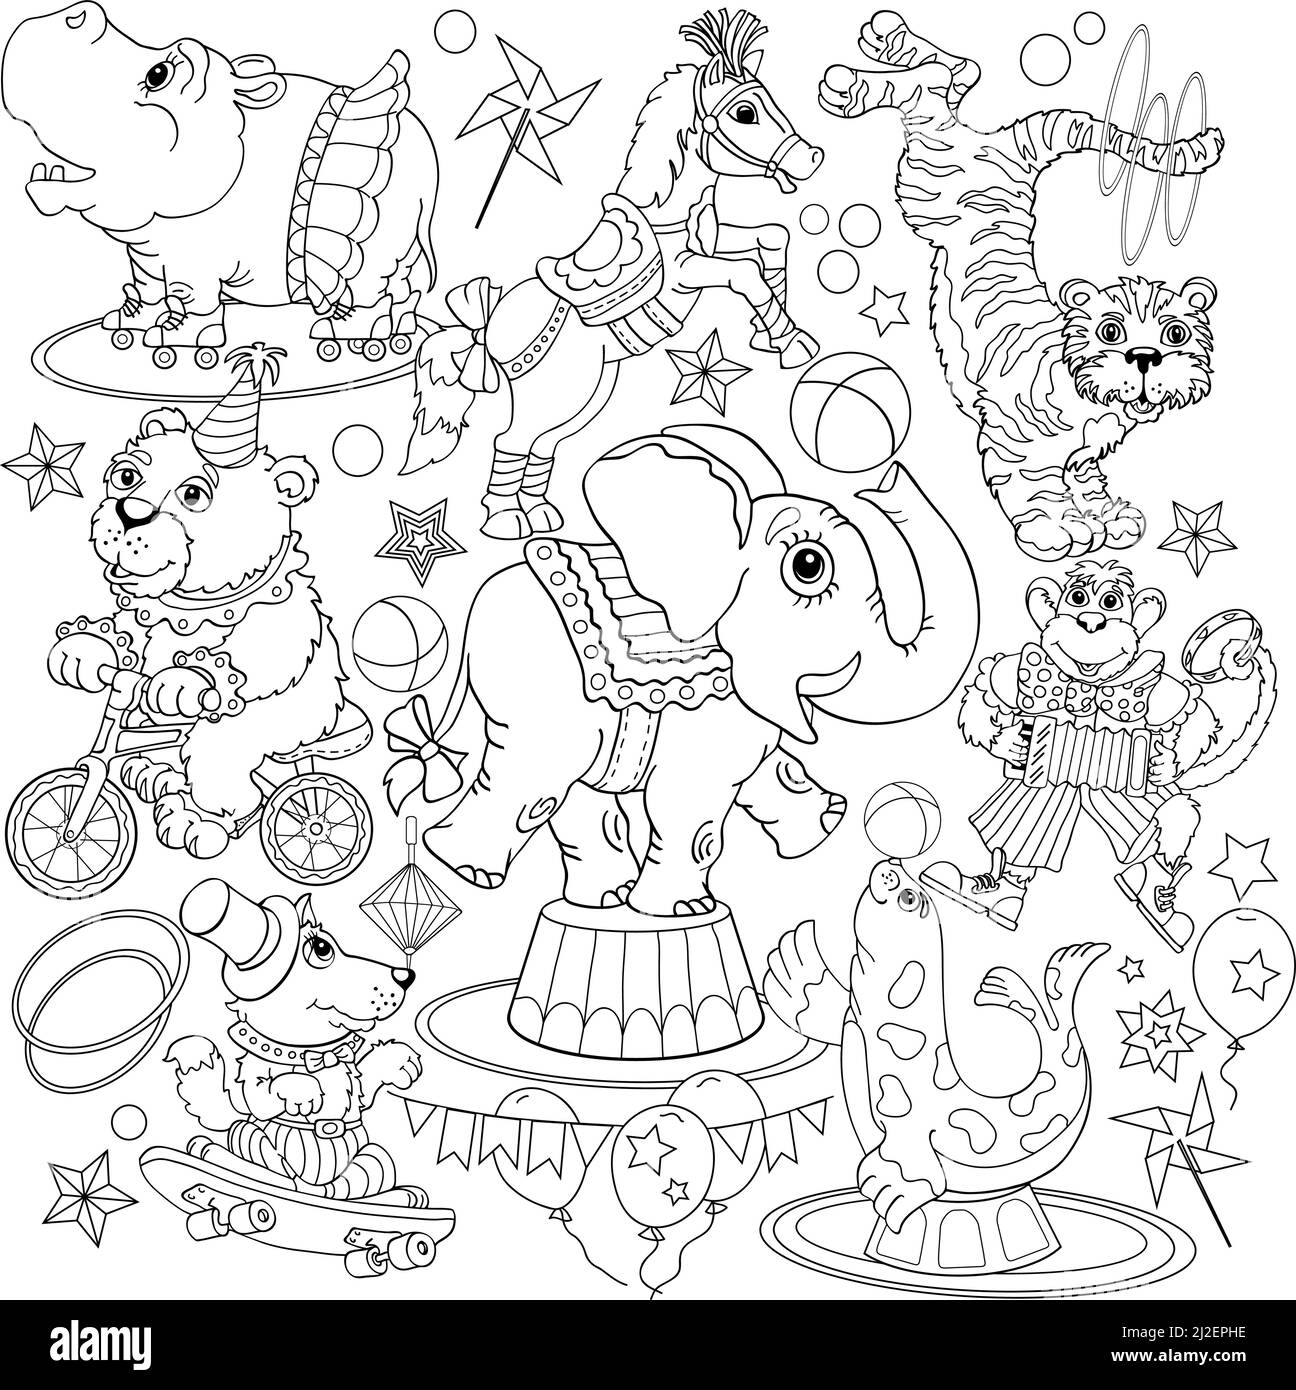 cirque schéma de dessin doodle anti-stress, diverses poses et situations, dessin, vecteur, images, dessin animé Illustration de Vecteur